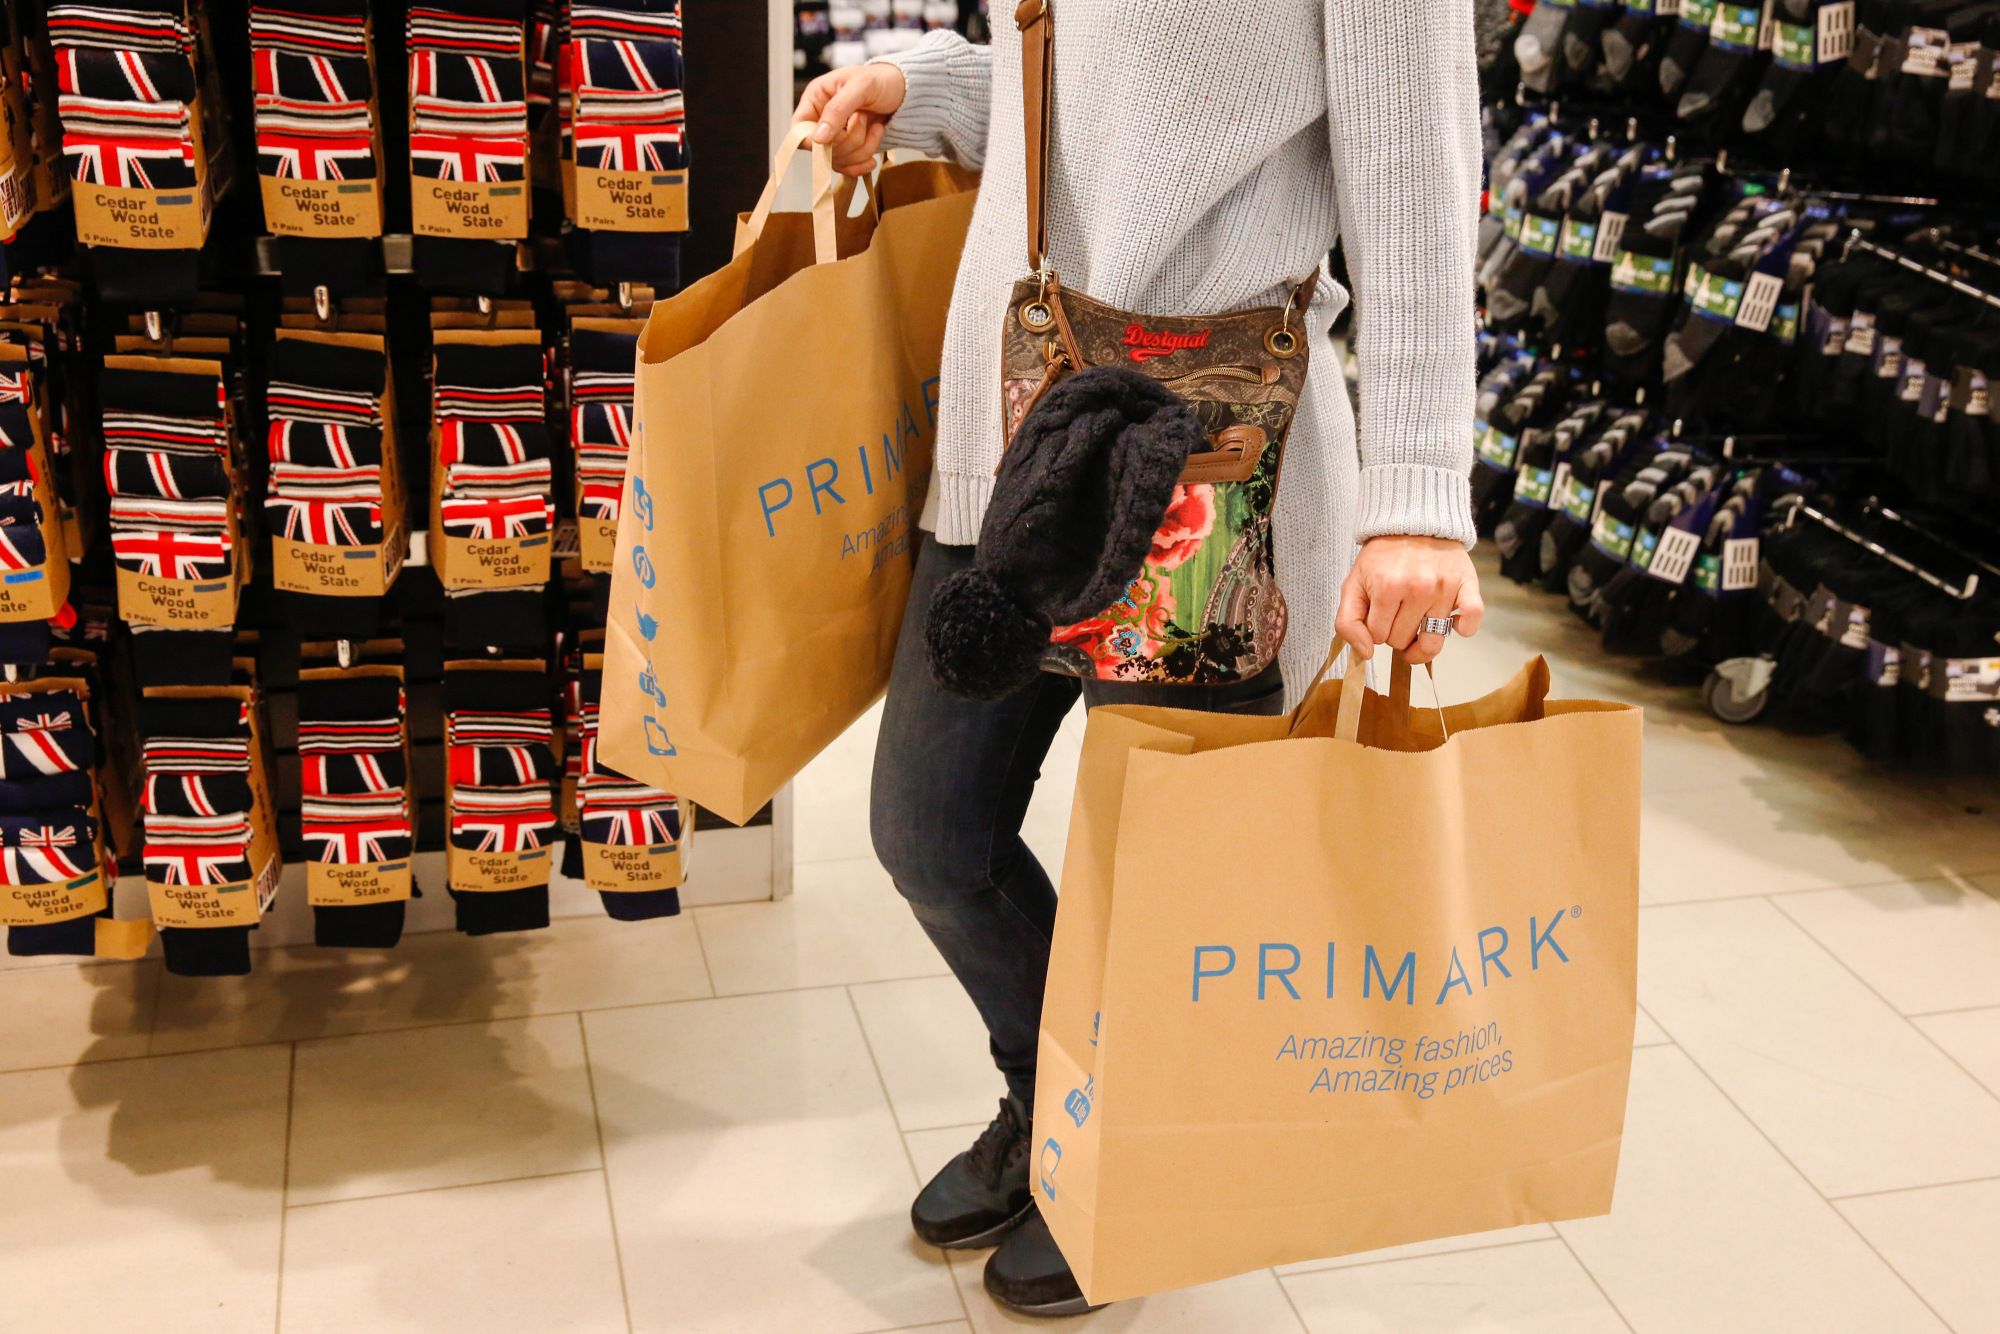 Primark Profitability to Grow as Retailer Reduces Markdowns